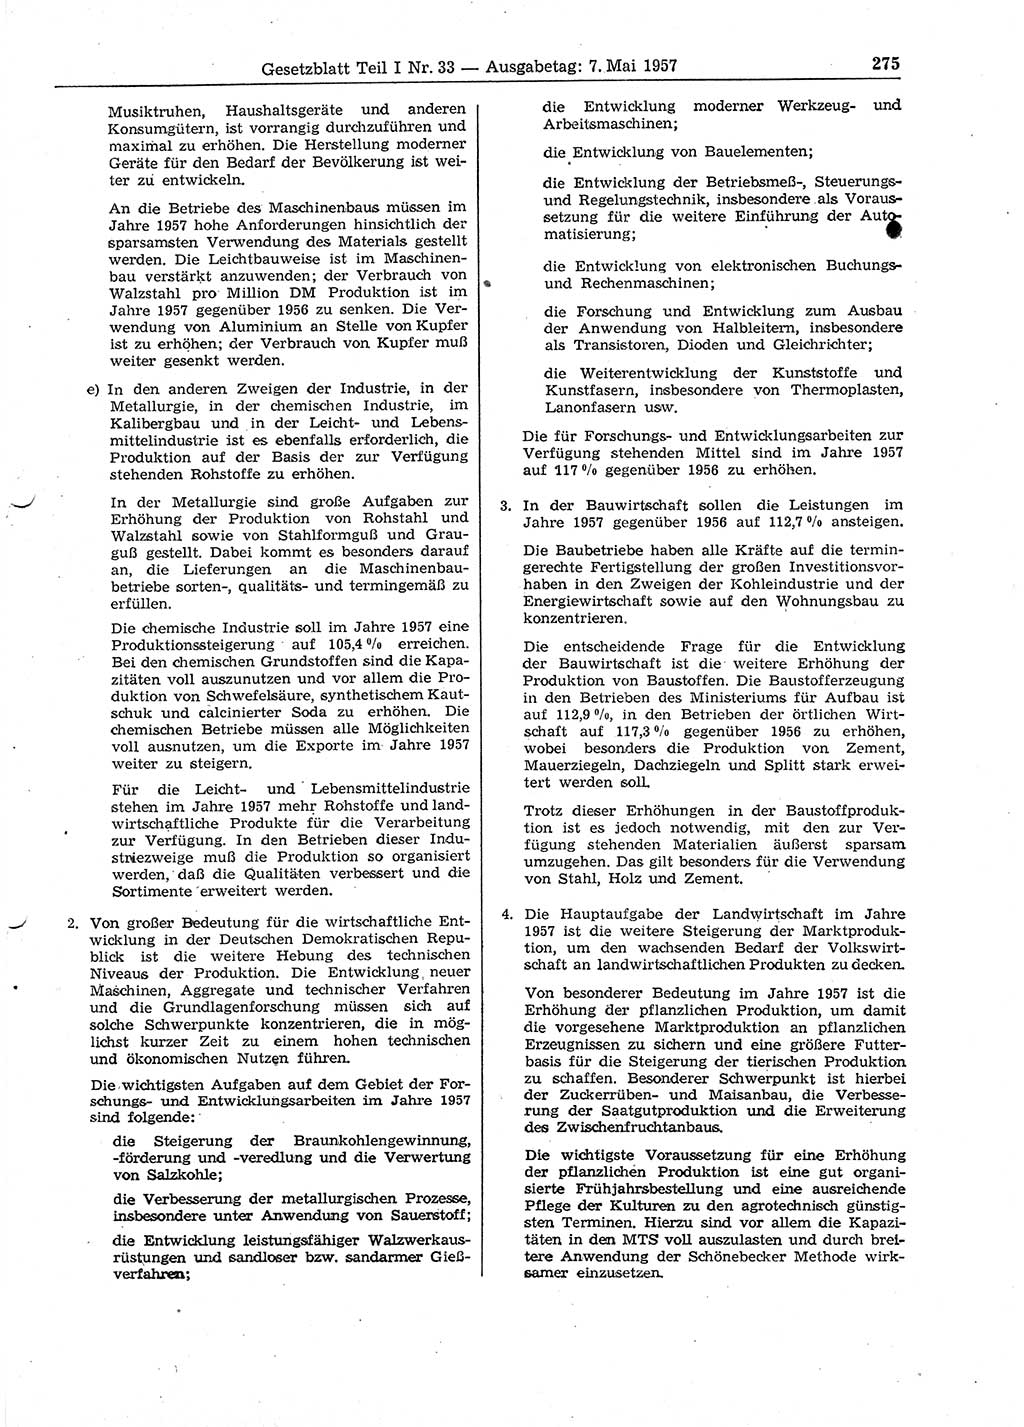 Gesetzblatt (GBl.) der Deutschen Demokratischen Republik (DDR) Teil Ⅰ 1957, Seite 275 (GBl. DDR Ⅰ 1957, S. 275)